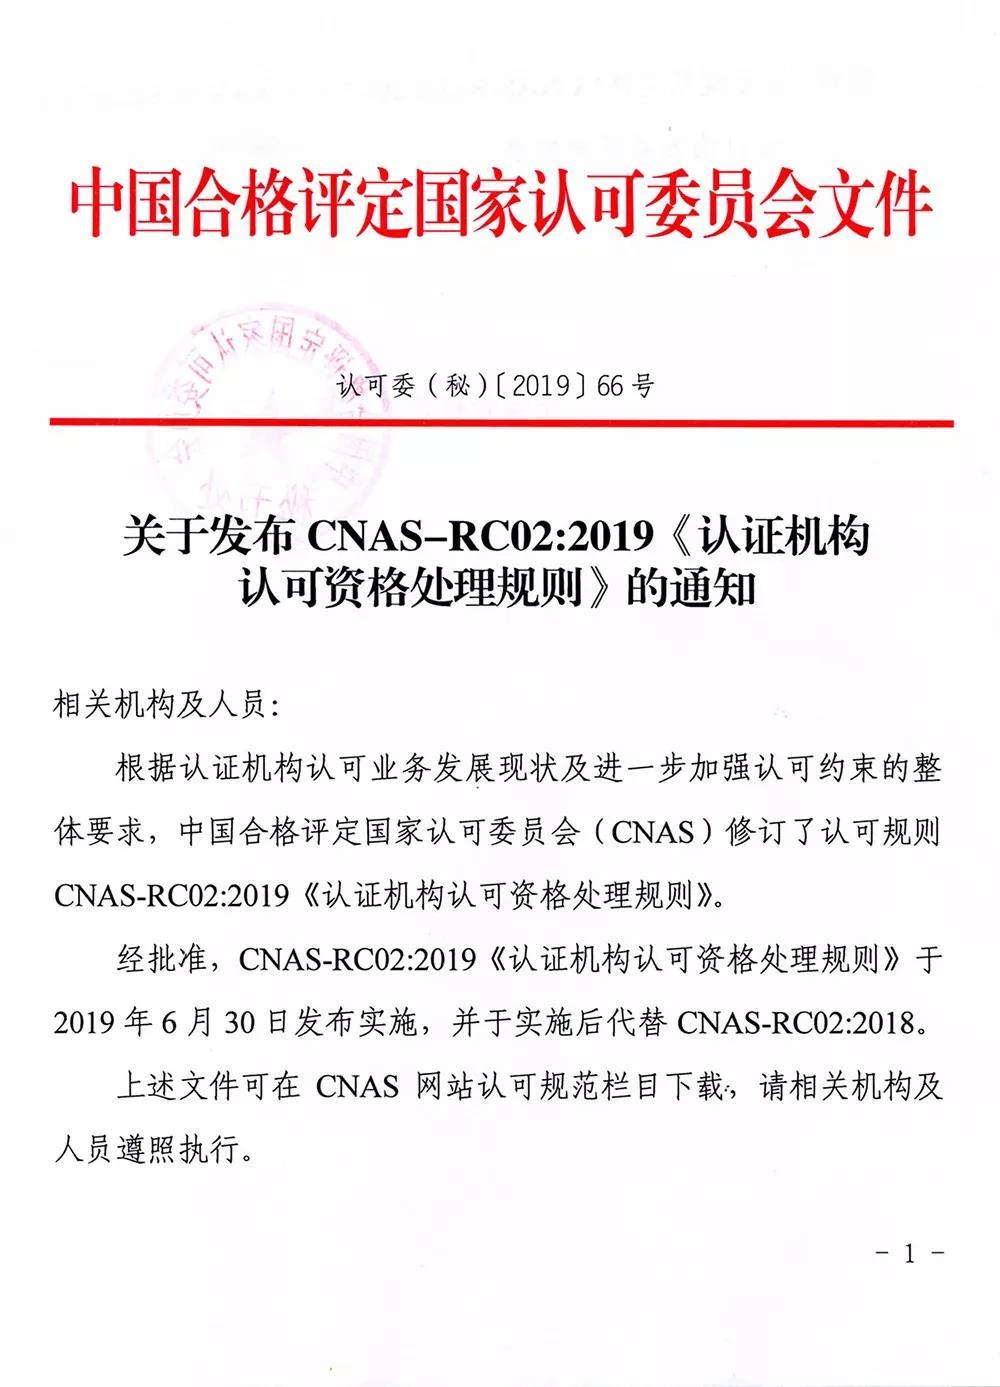 CNAS-RC02：2019